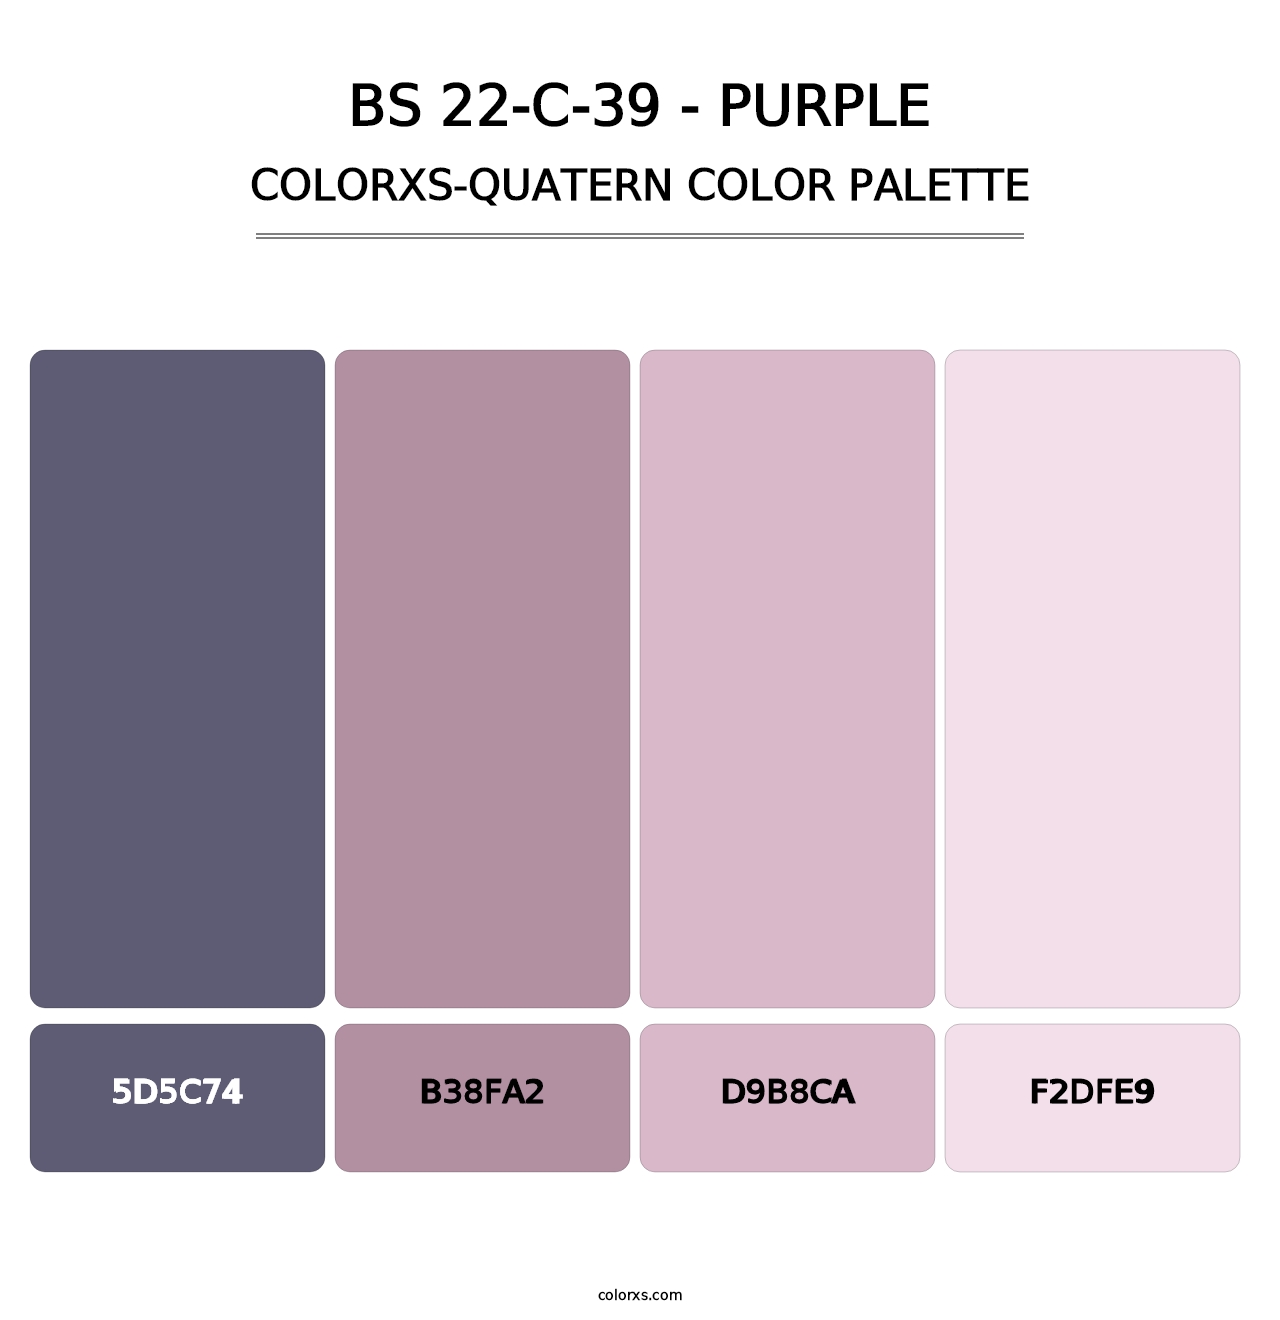 BS 22-C-39 - Purple - Colorxs Quatern Palette